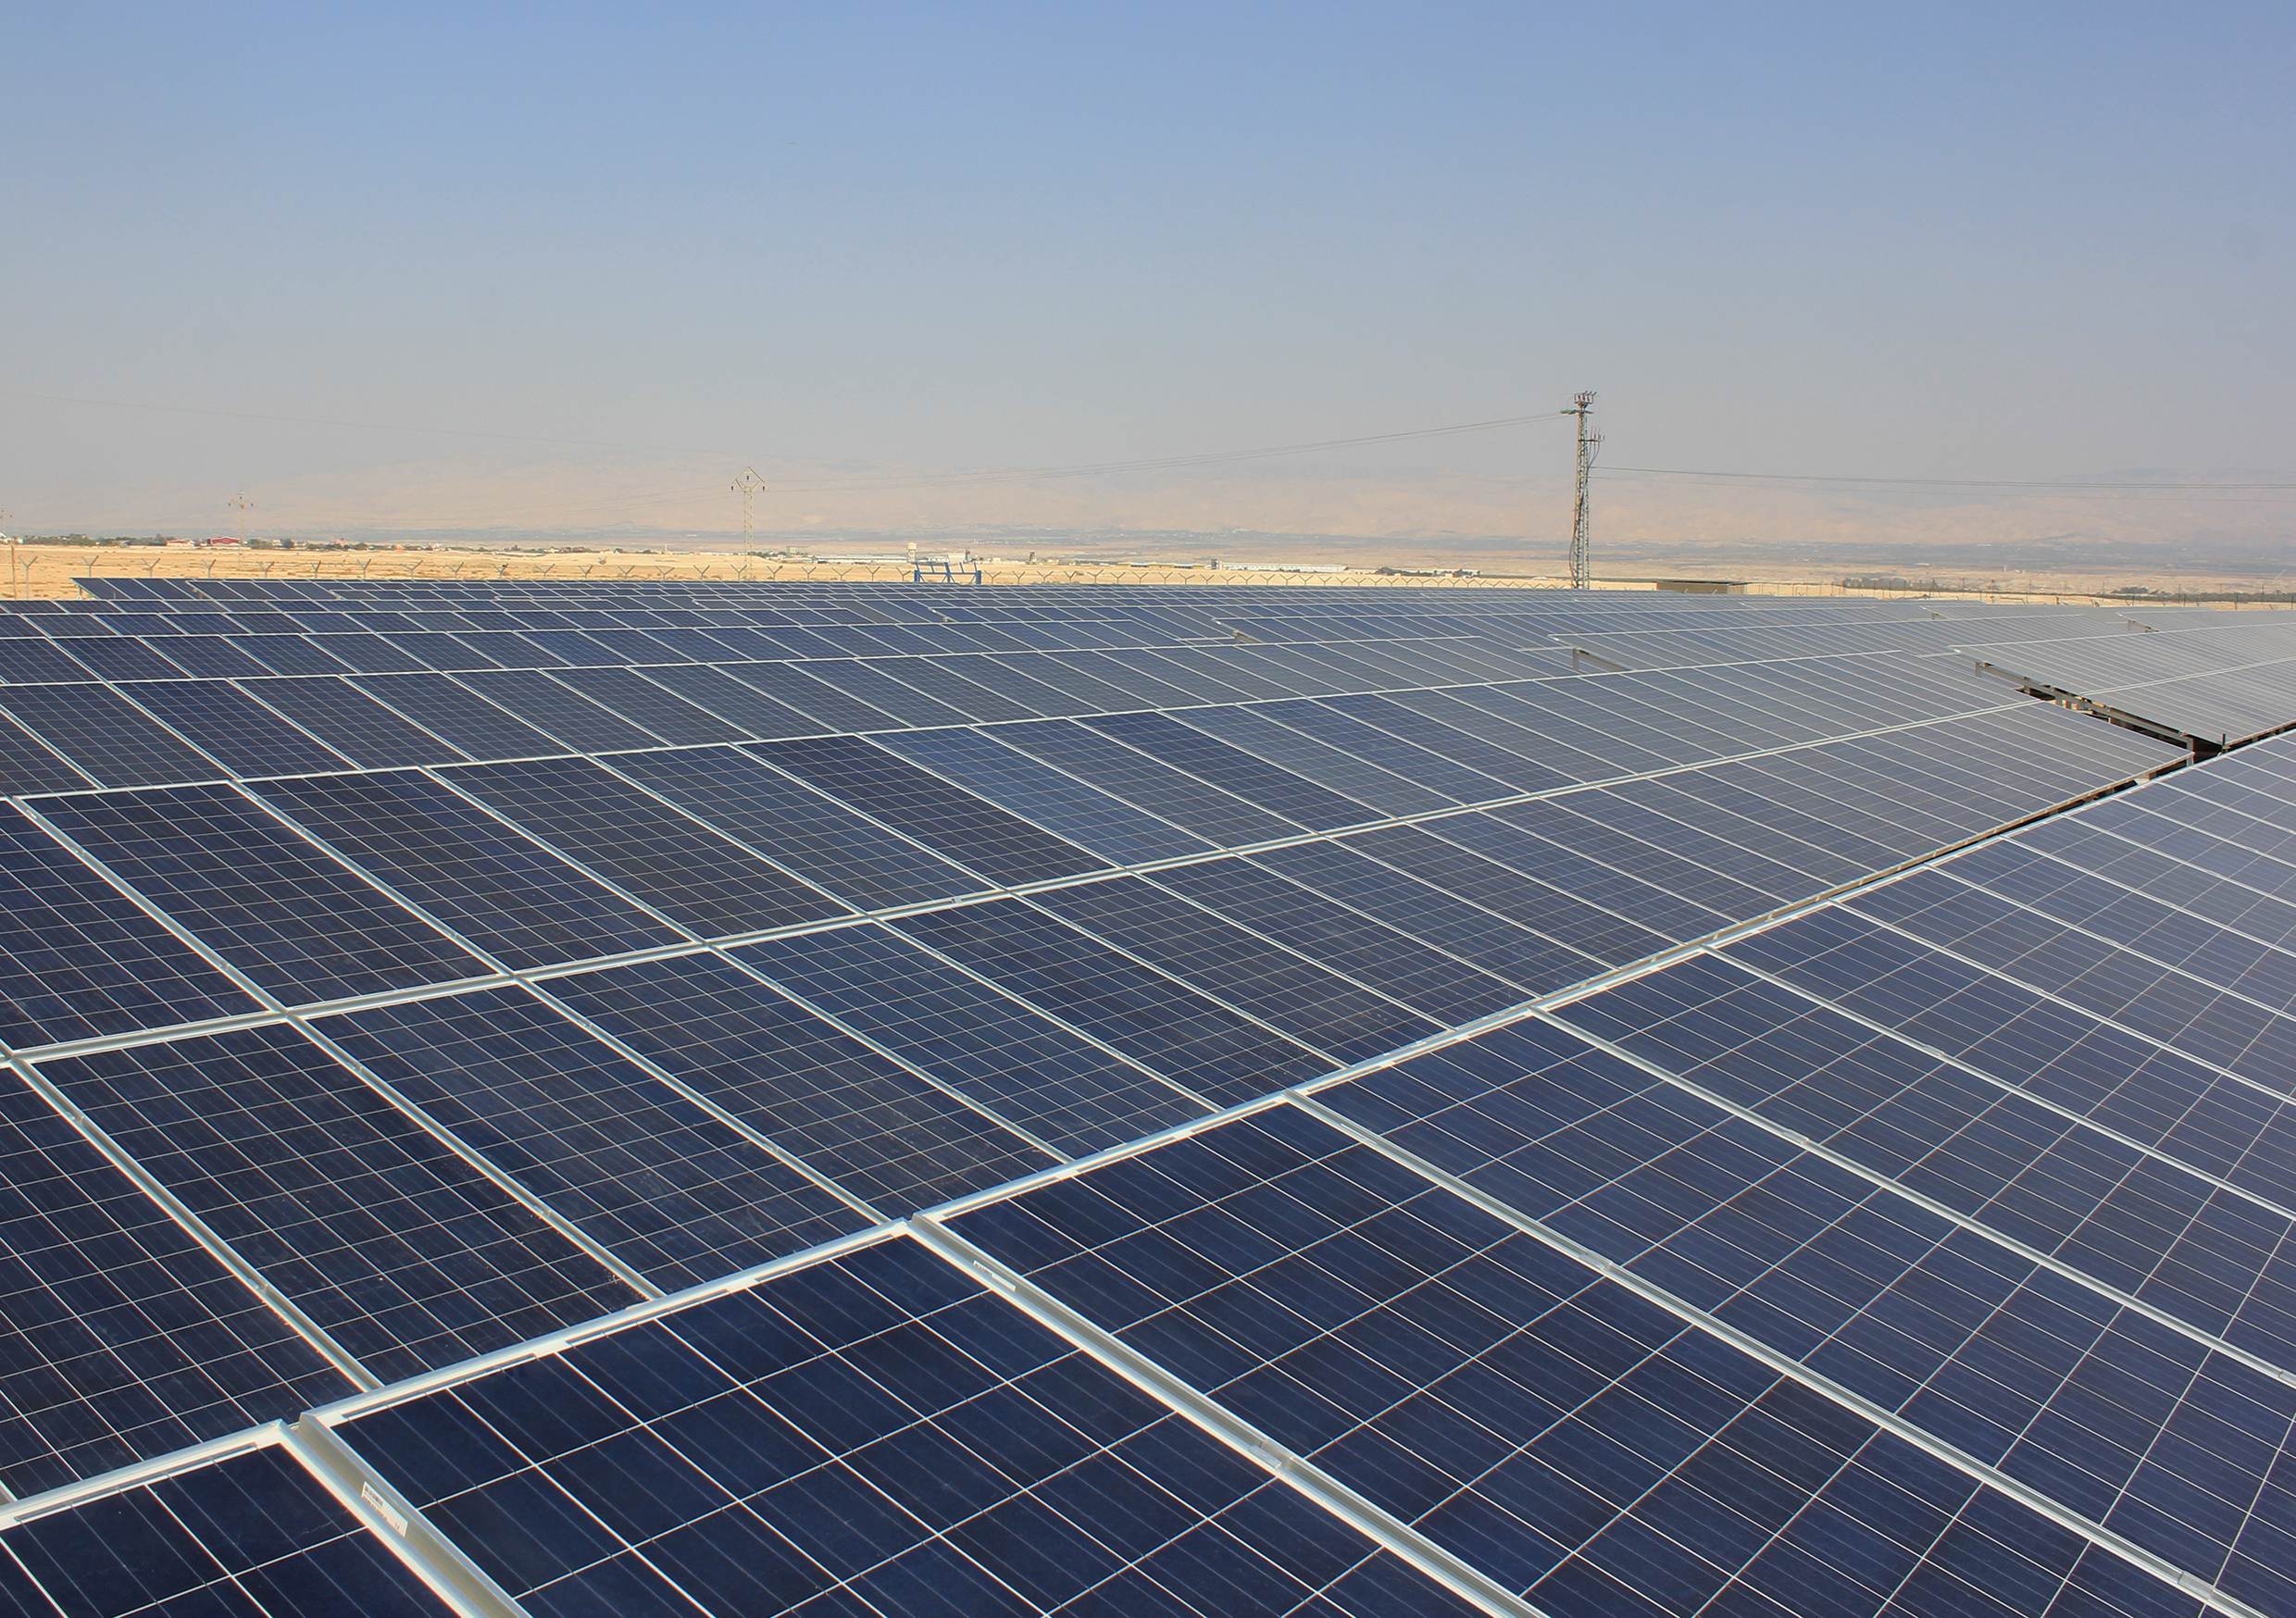 La construction de la centrale solaire photovoltaïque de Ngonye en Zambie commence